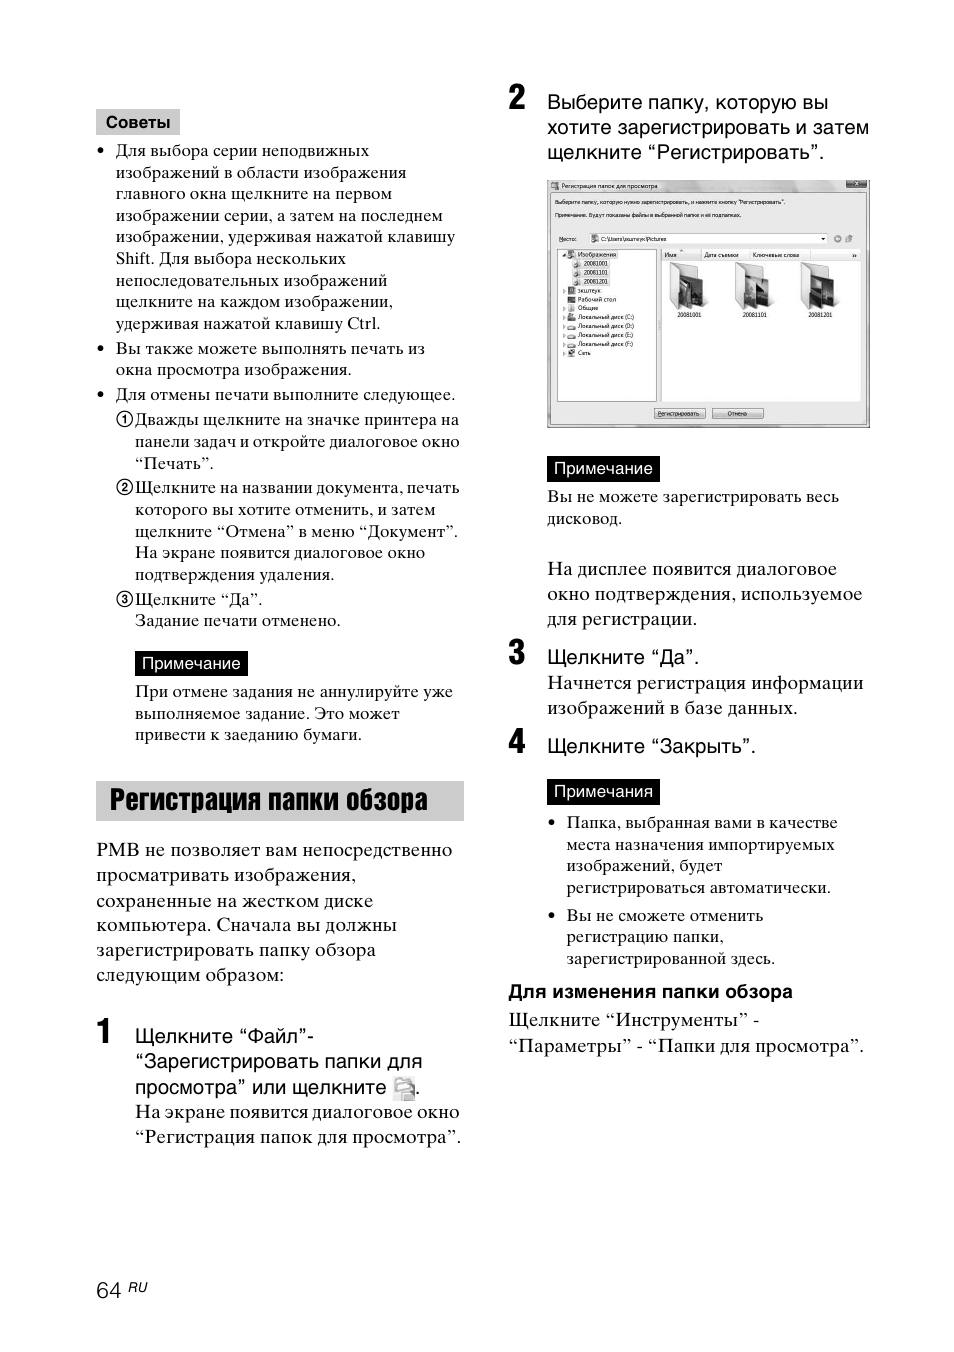 Регистрация папки обзора | Инструкция по эксплуатации Sony DPP-FP97 | Страница 64 / 92